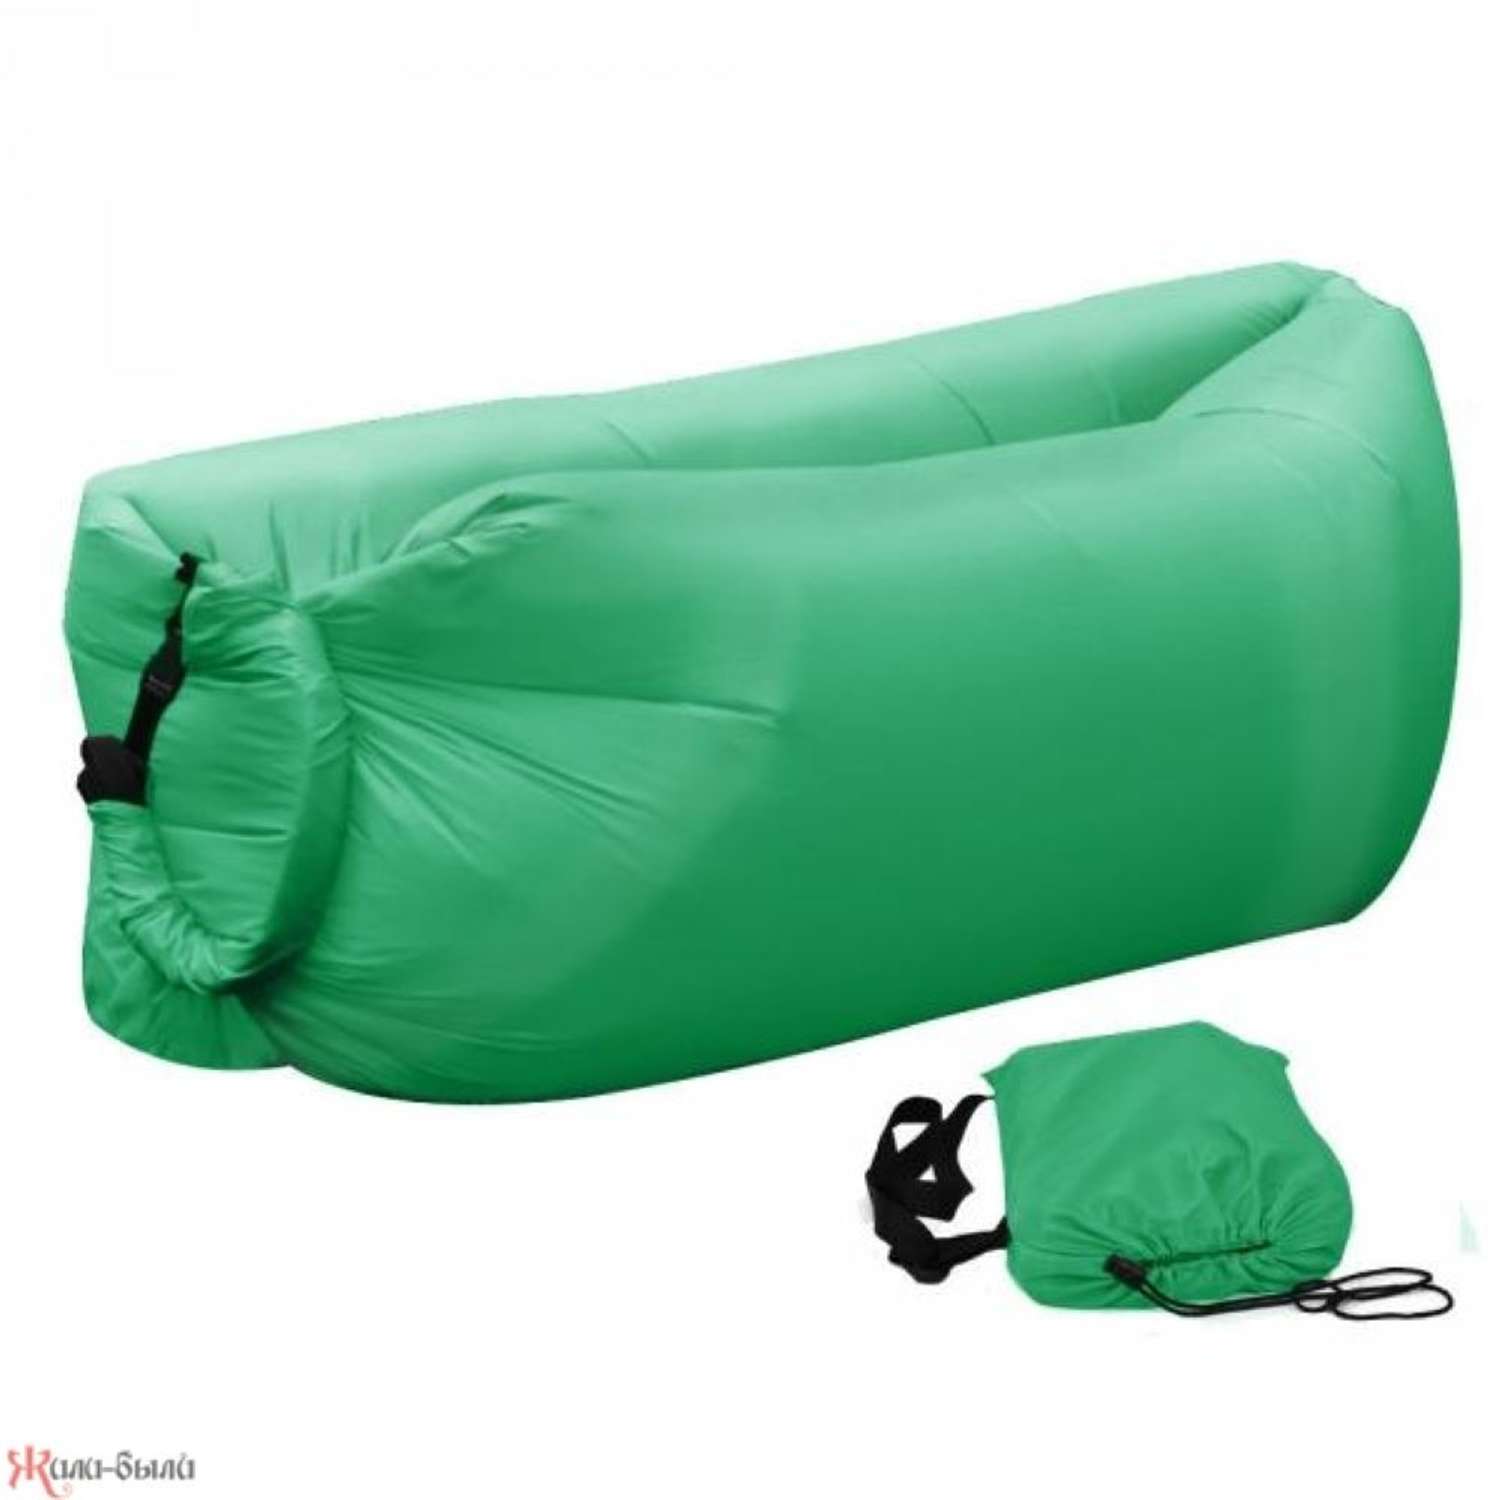 Надувной лежак Удачный сезон зеленый - фото 1